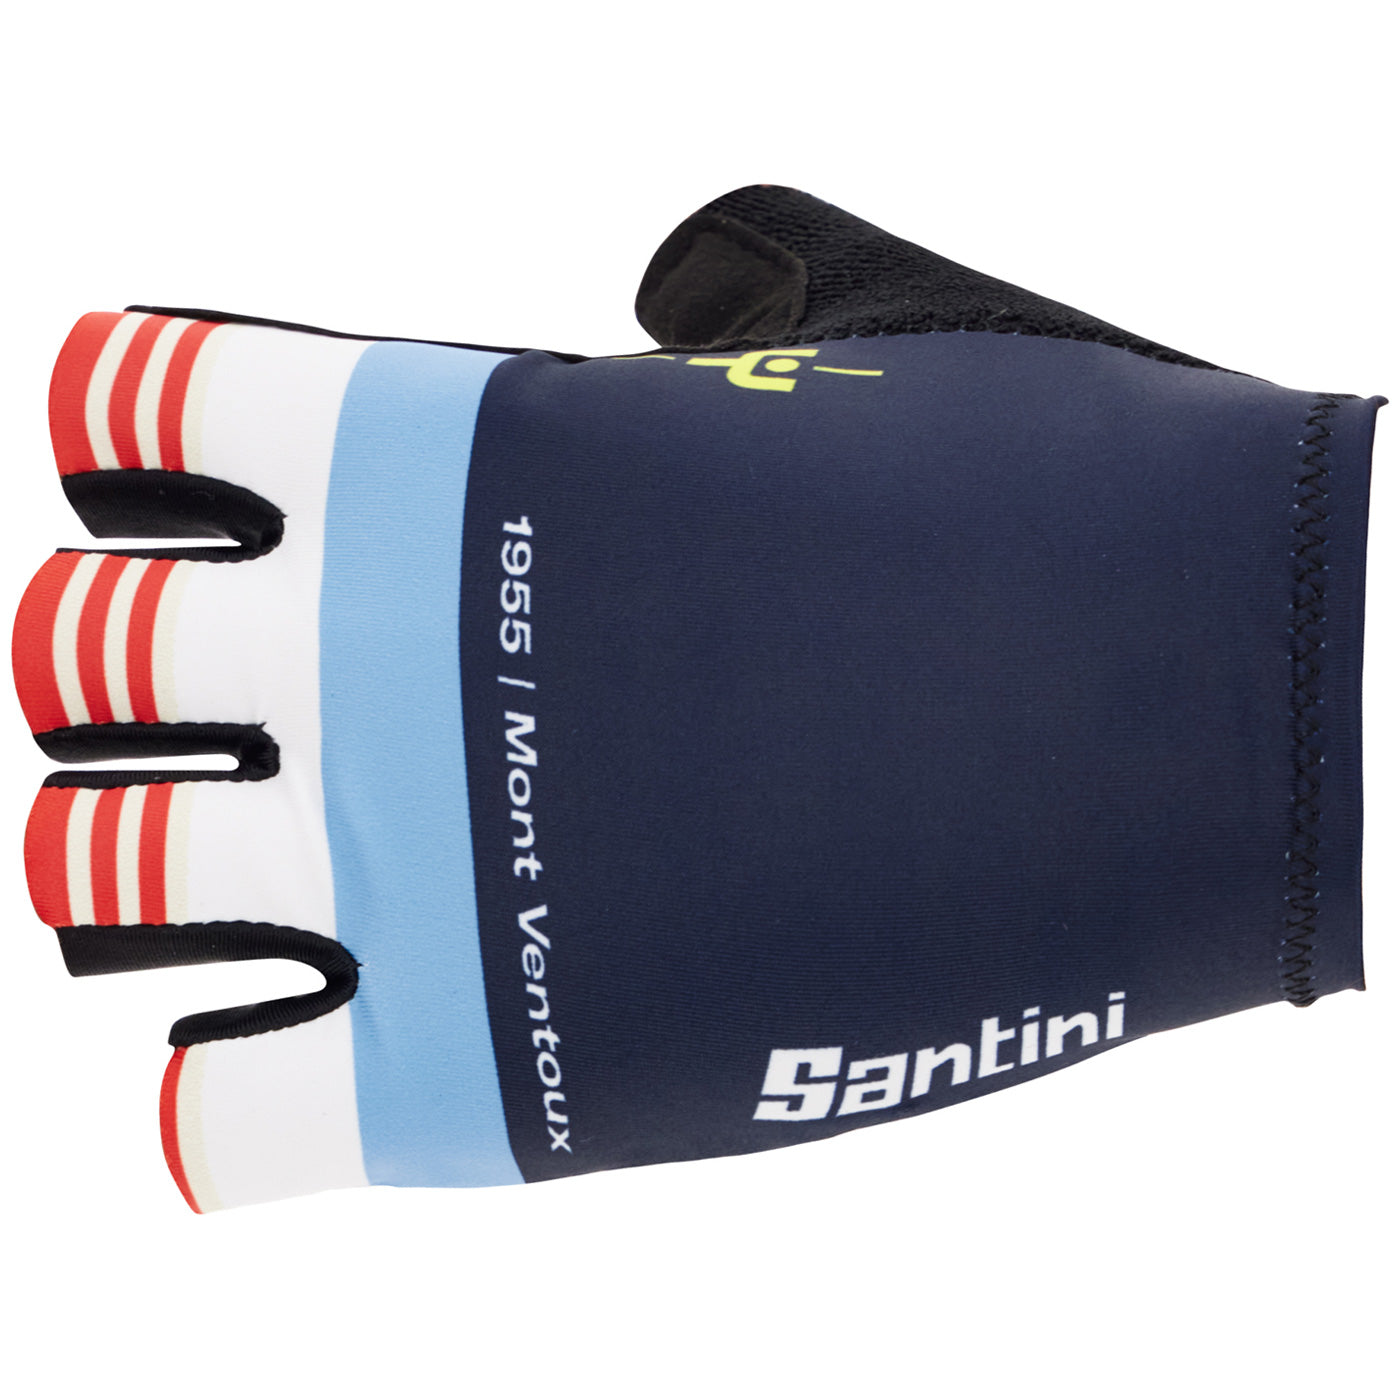 Santini Tour de France Maillot Jaune gloves - Mont Ventoux